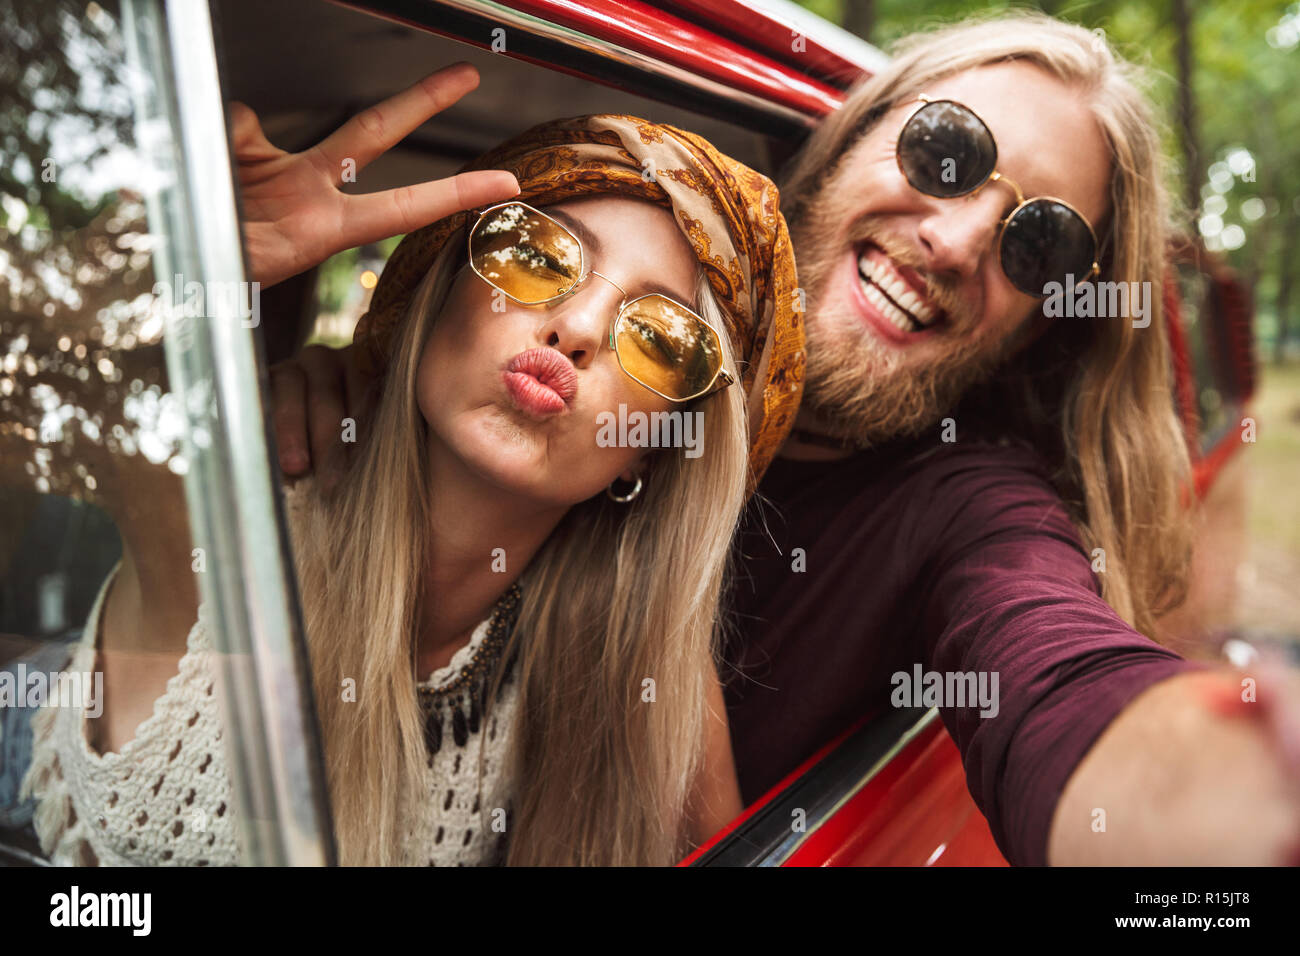 Photo de type couple hippie montrant signe de paix en conduisant une fourgonnette rétro en forêt Banque D'Images